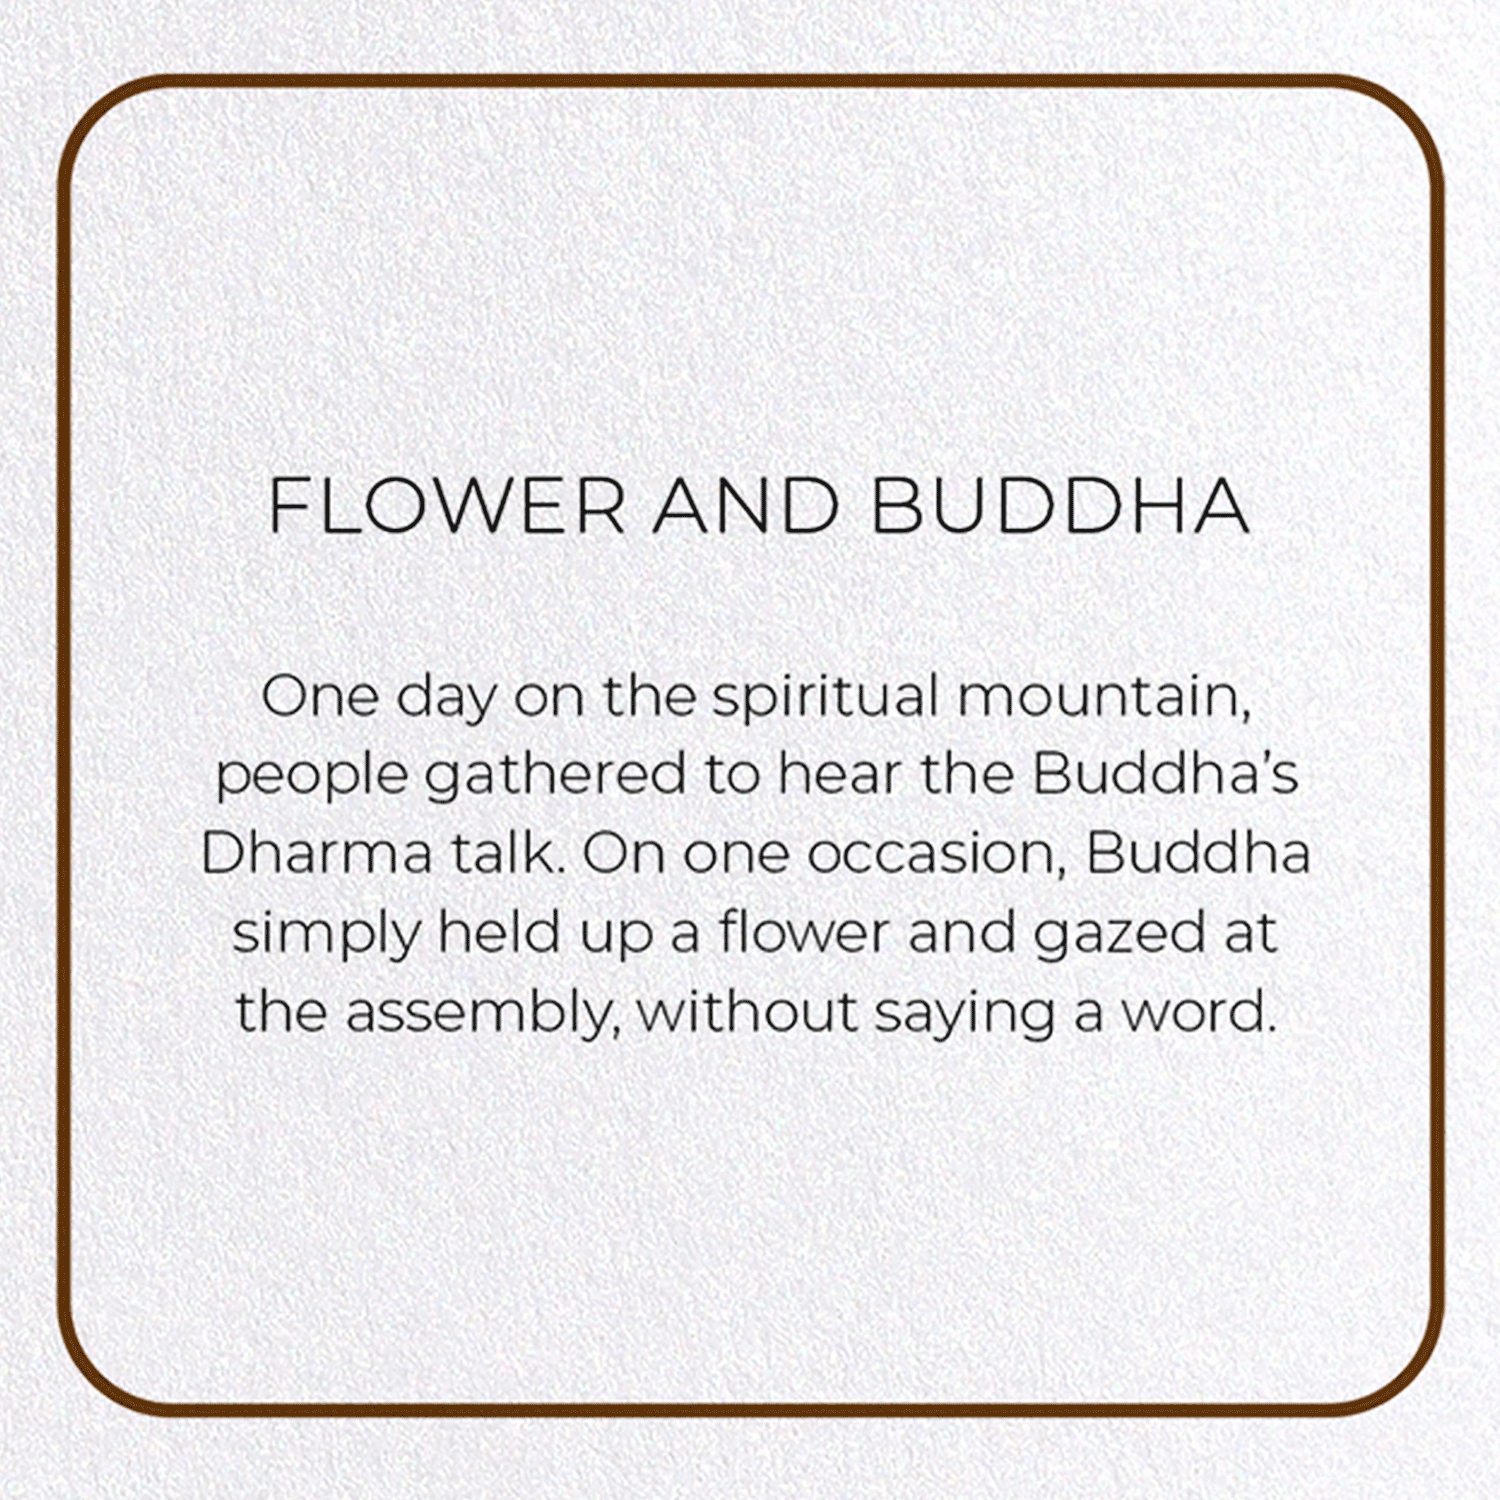 FLOWER AND BUDDHA